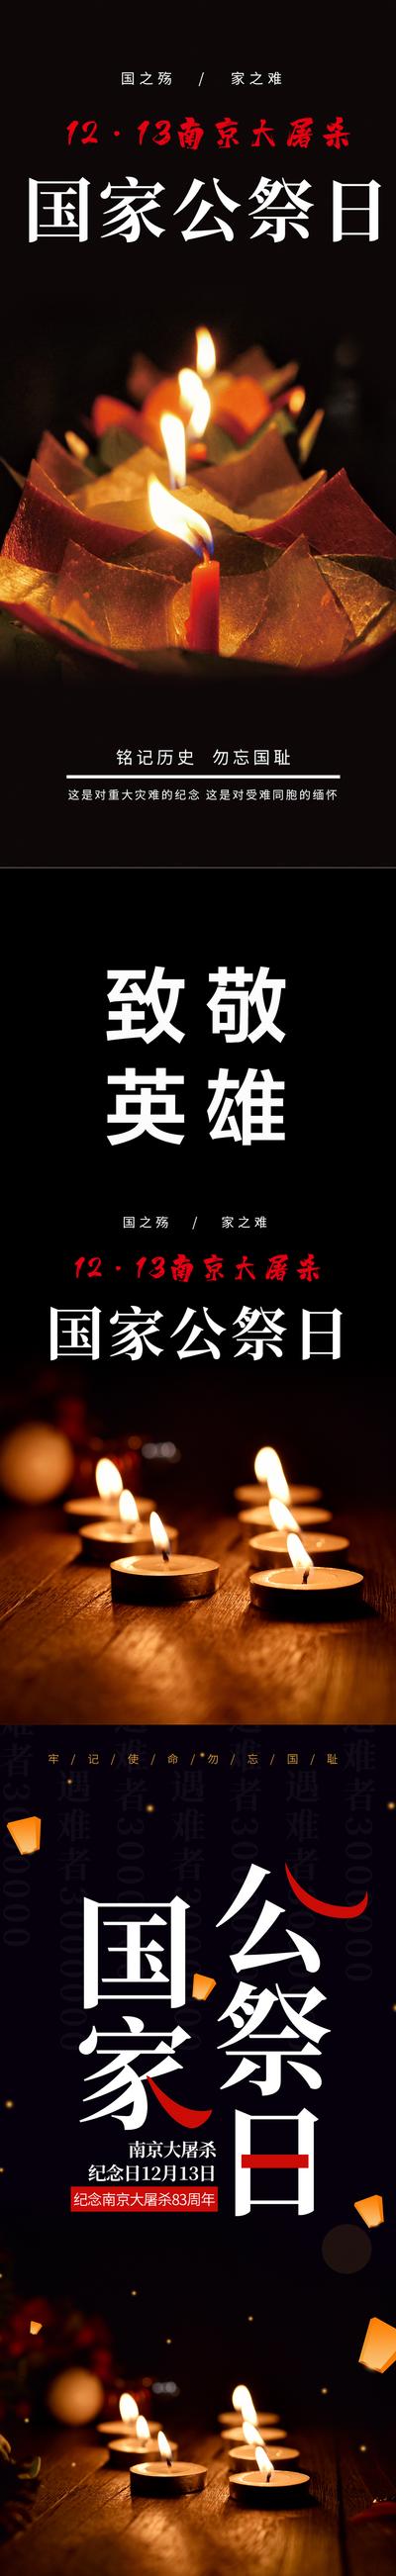 南门网 海报 公历节日 1213 国家公祭日 南京大屠杀 烈士 默哀